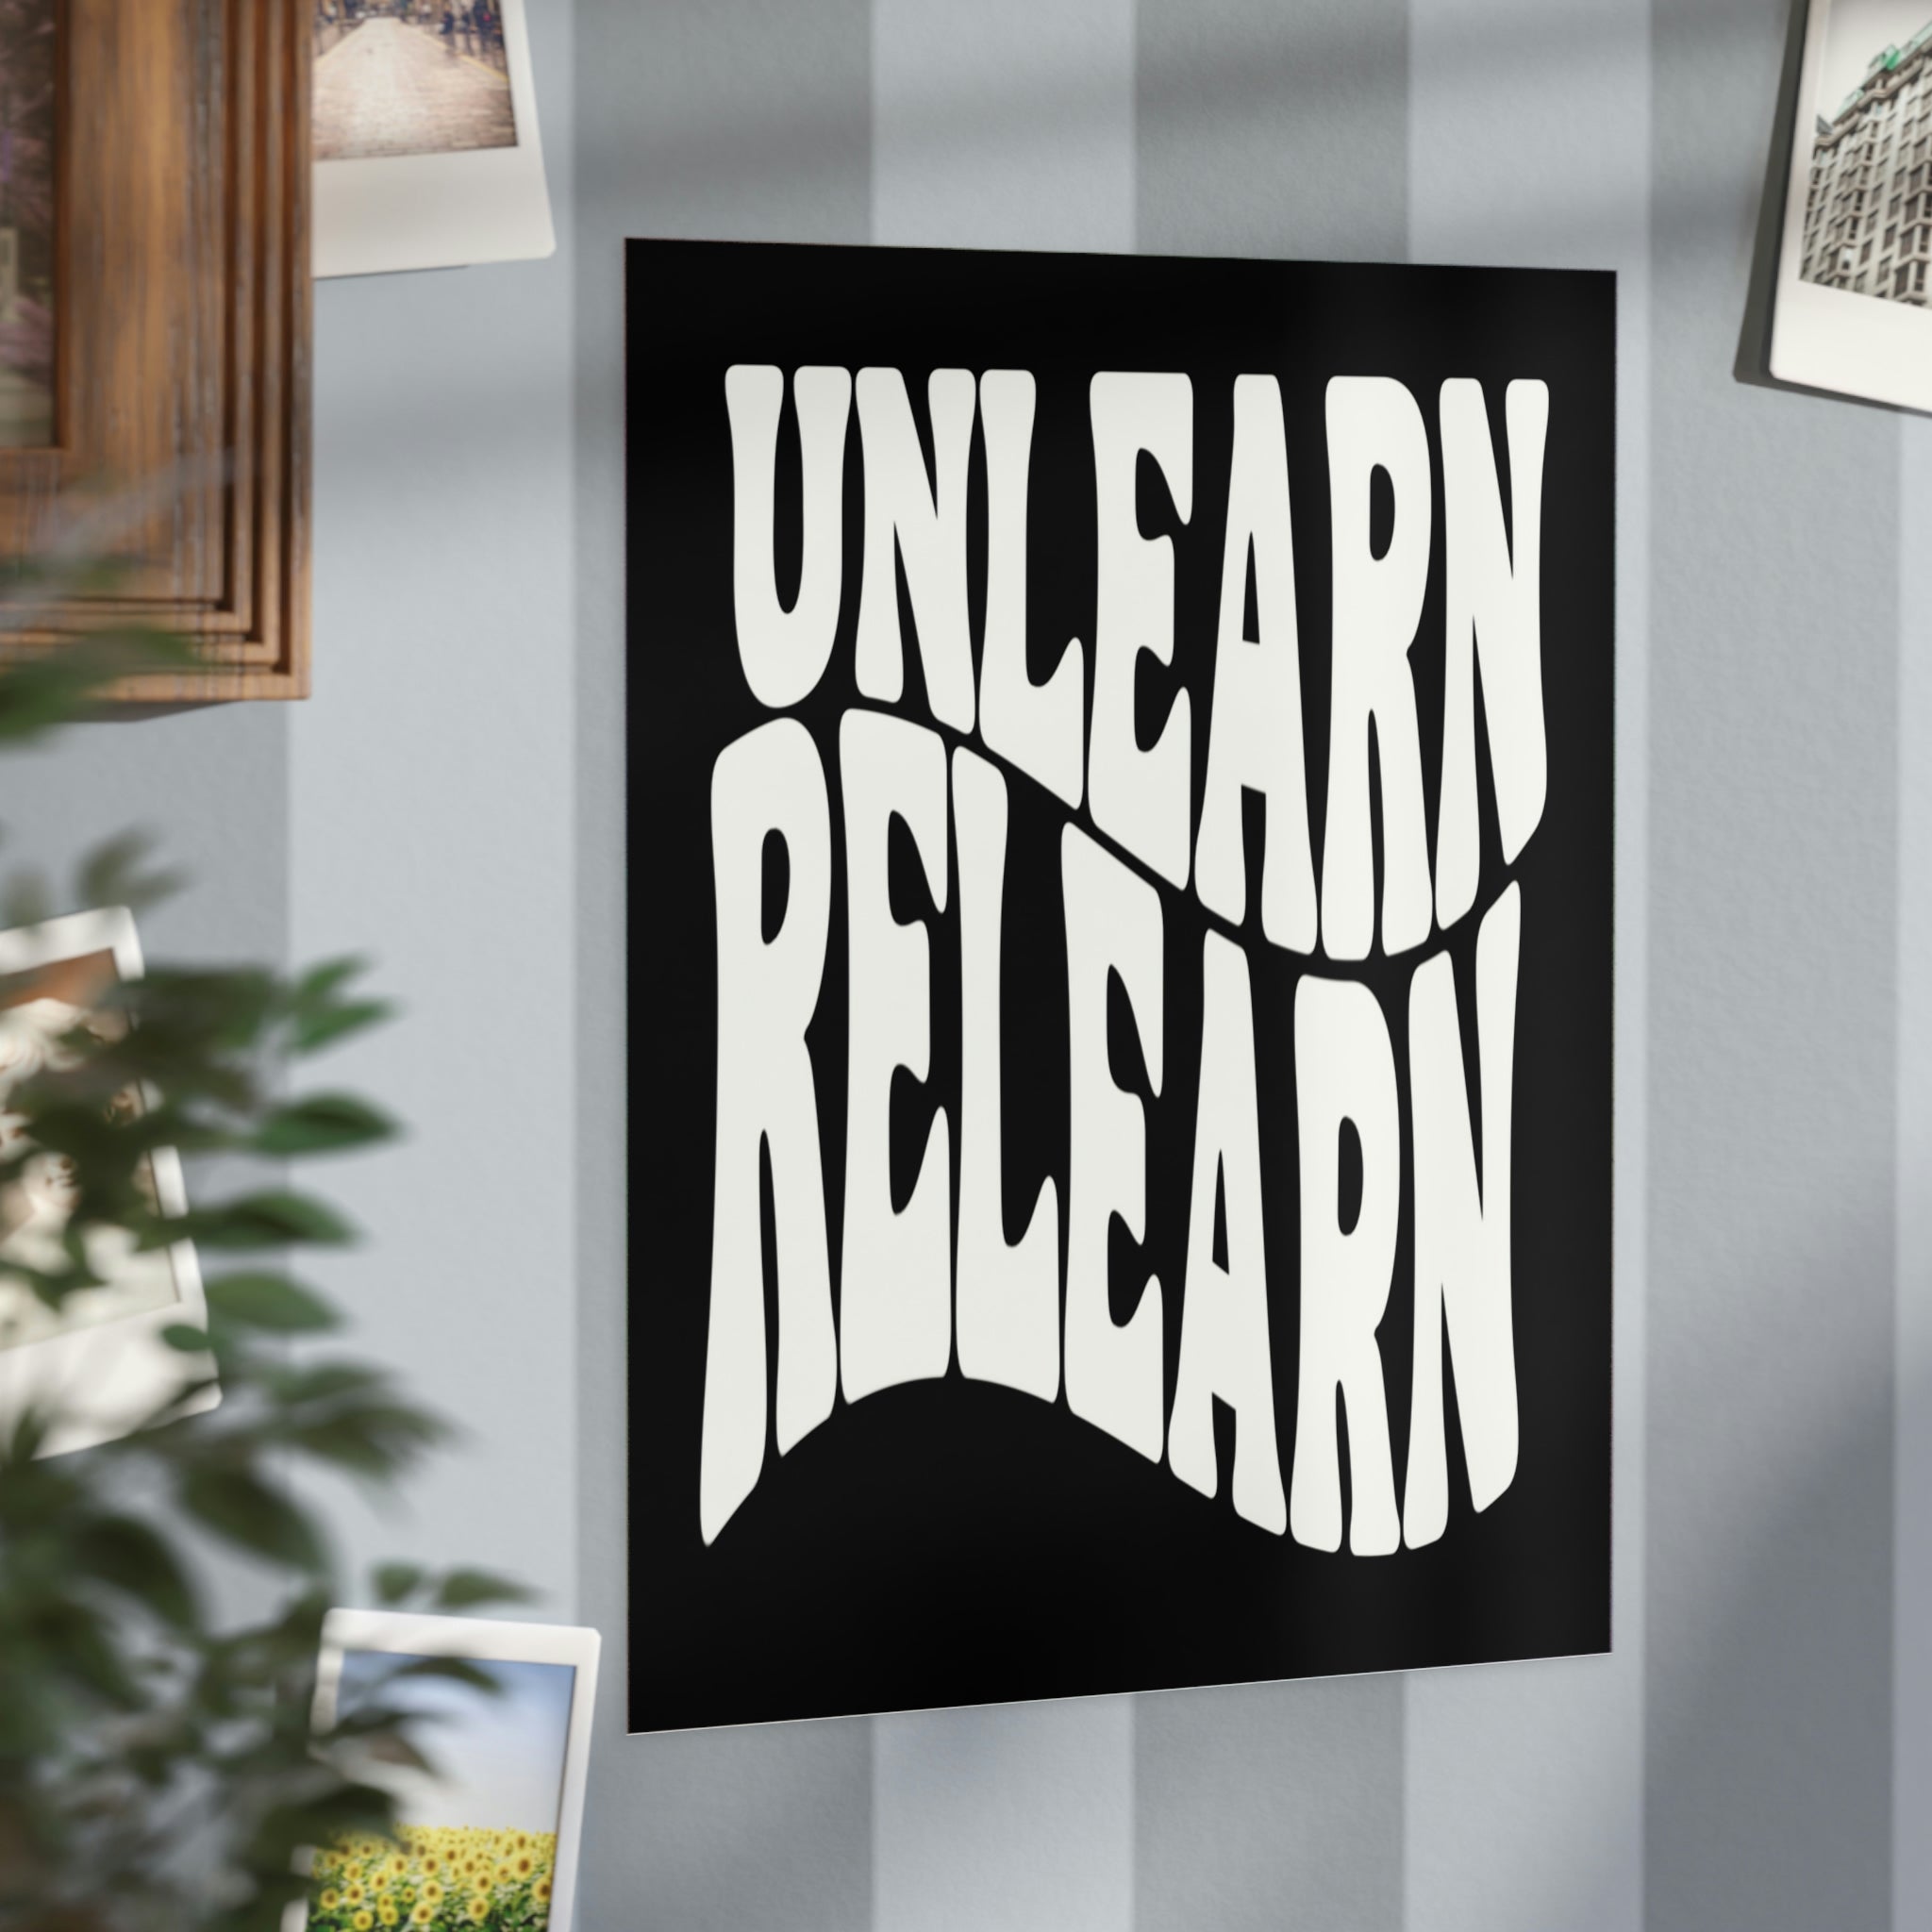 Unlearn Relearn Unframed Prints